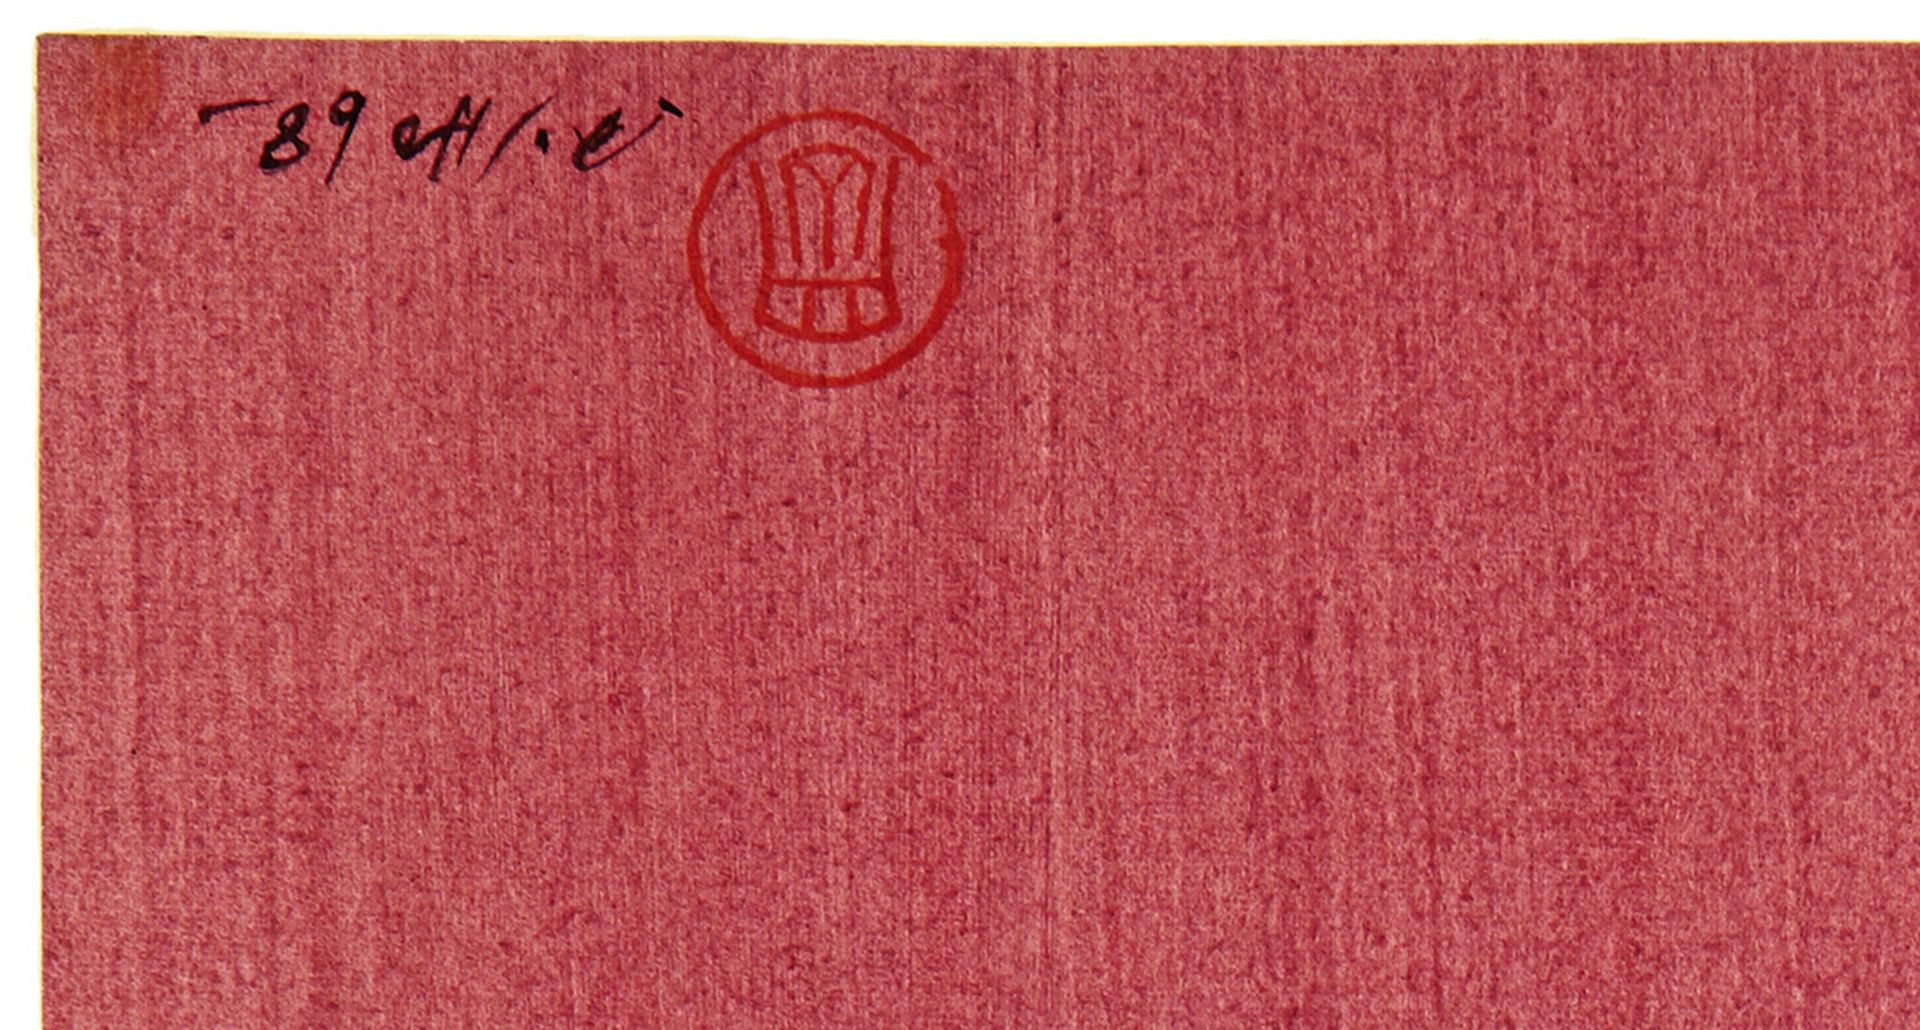 Huo Gang1932 Nanjing"Komposition". Mischtechnik. Unten rechts signiert. Datiert 1968. - Bild 2 aus 2